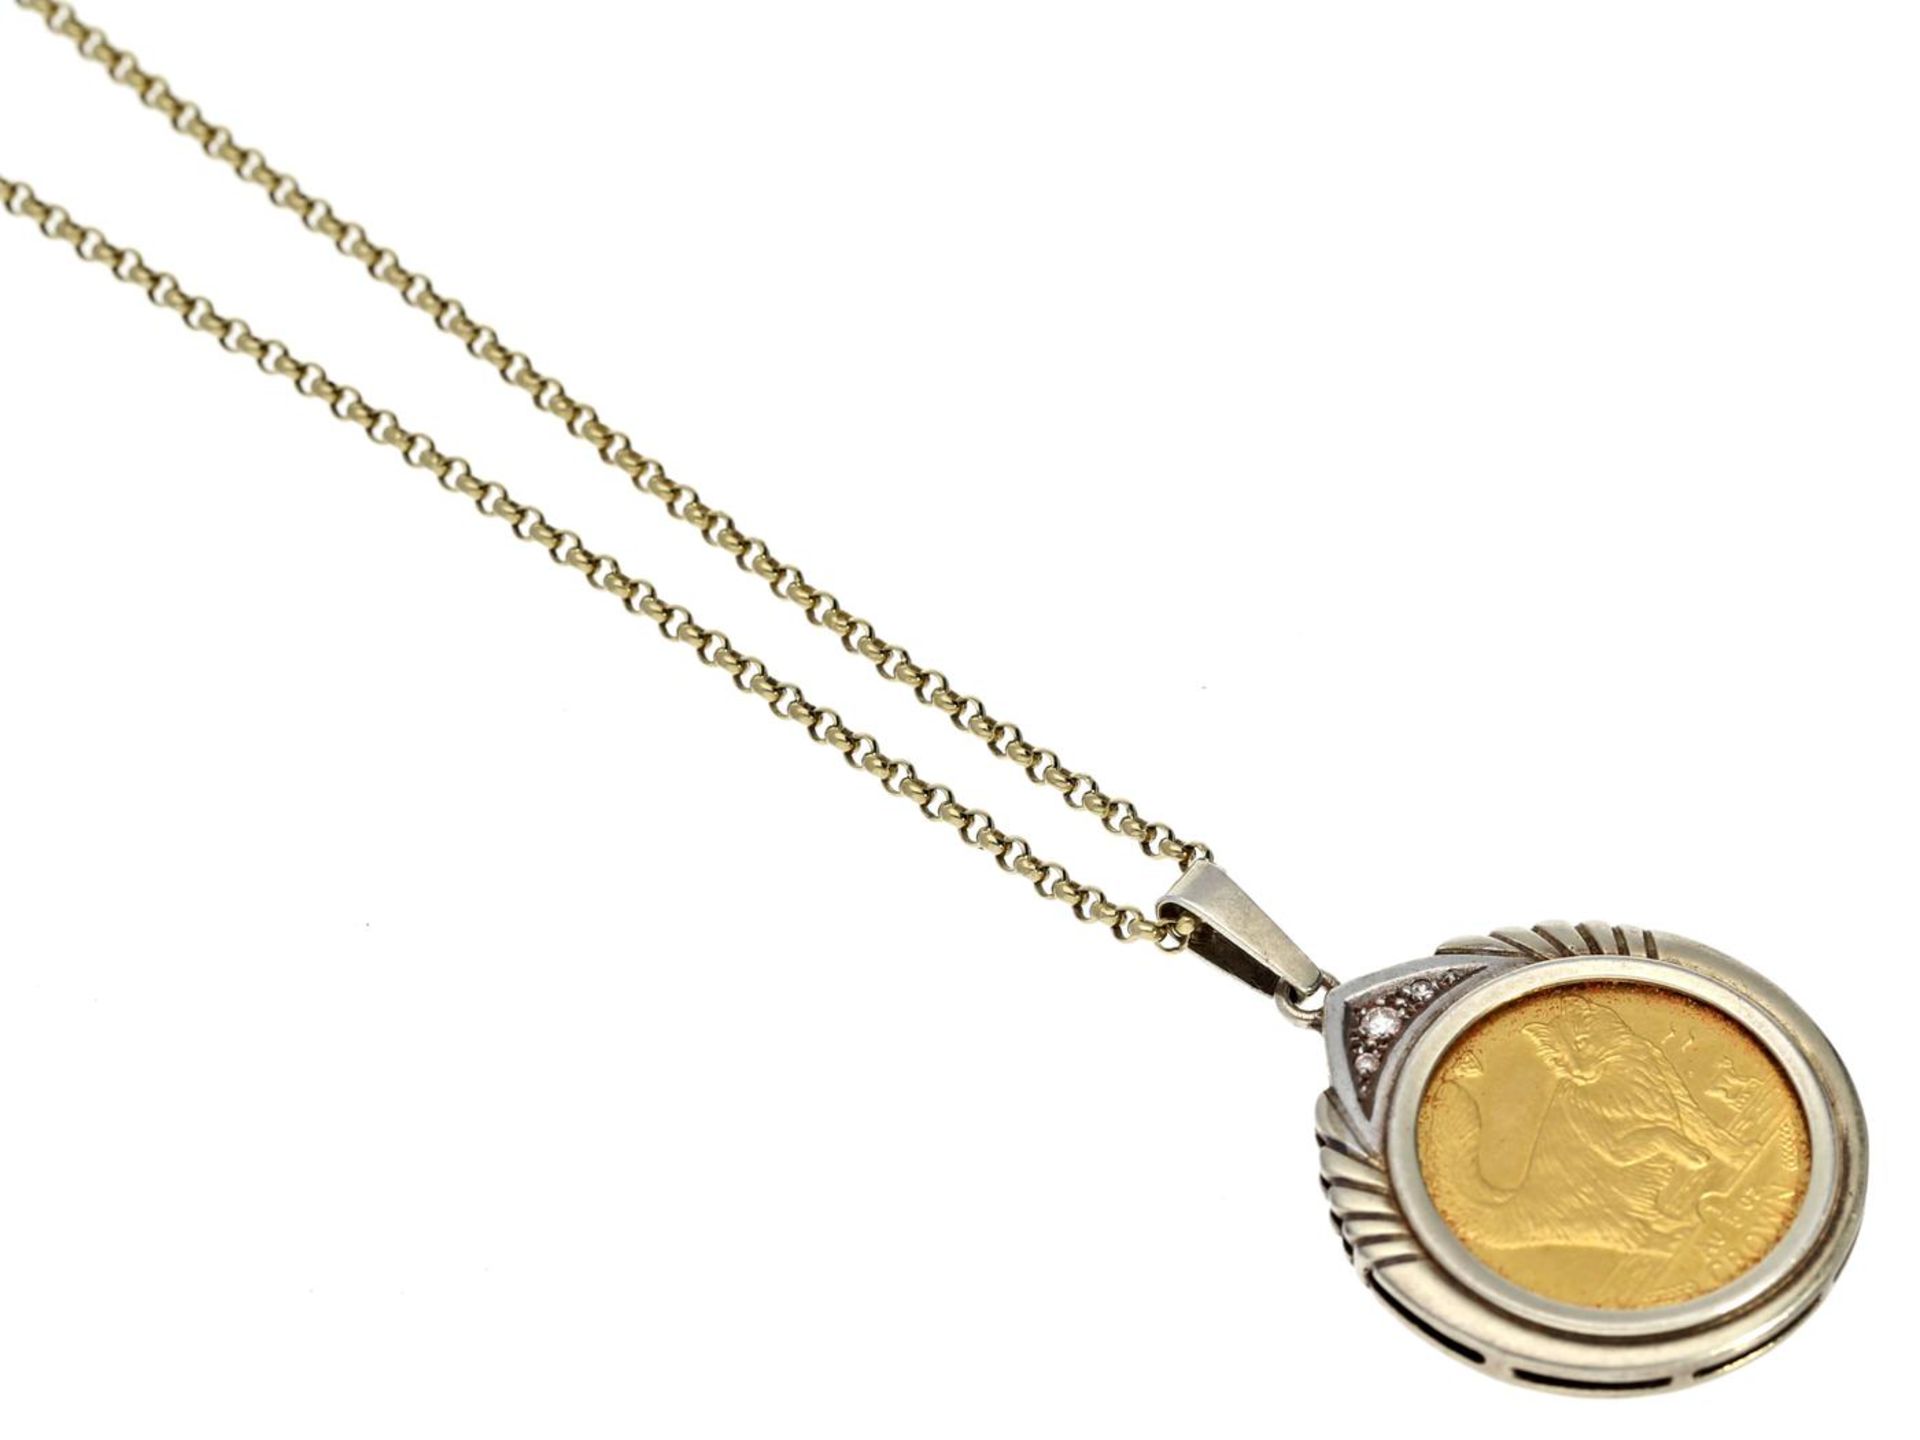 Kette/Collier: goldene Collierkette mit dekorativem Münzanhänger, Isle of Man Kette ca. 40,5cm lang,